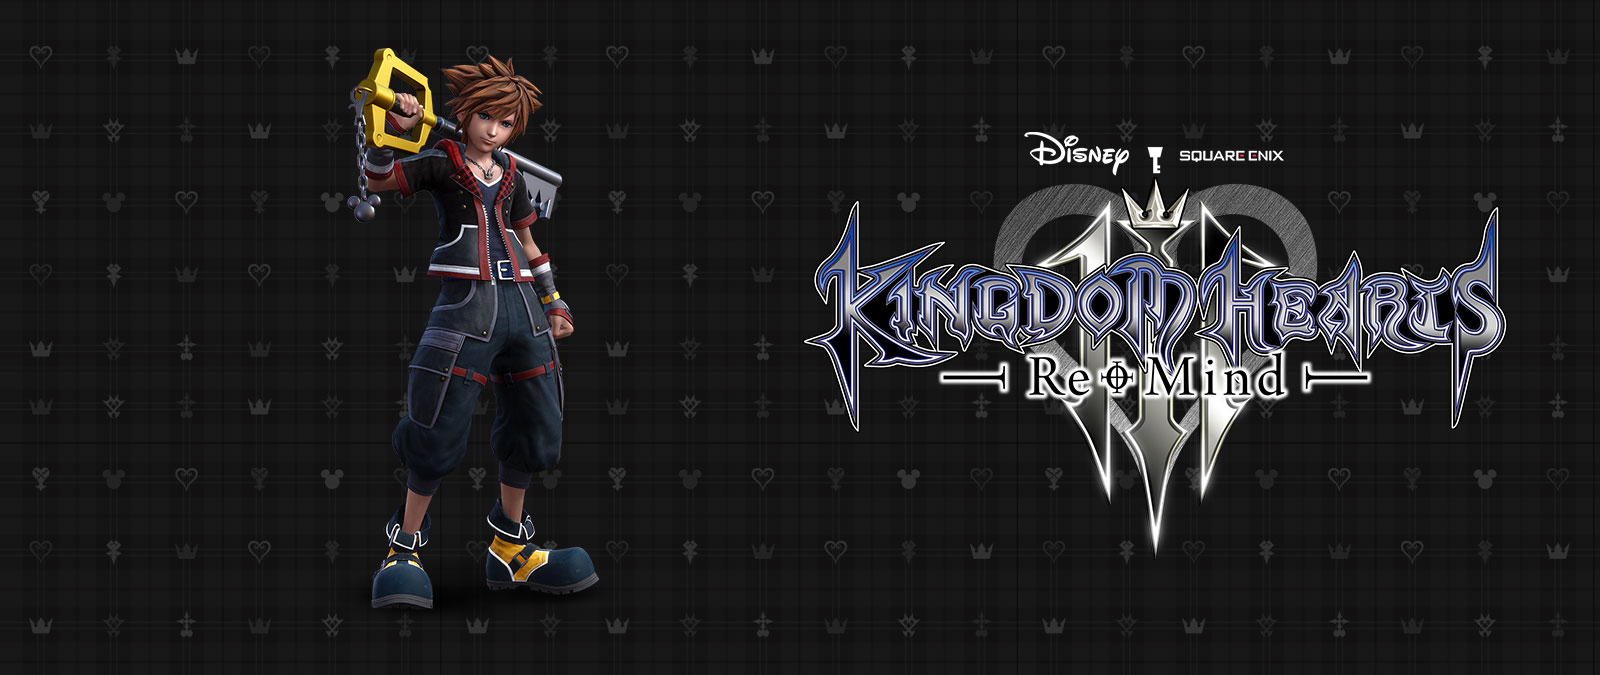 Disney Kingdom Hearts 3, Re-Mind, Sora se posiciona em um fundo preto enquanto Keyblade se apoia em seu ombro. 